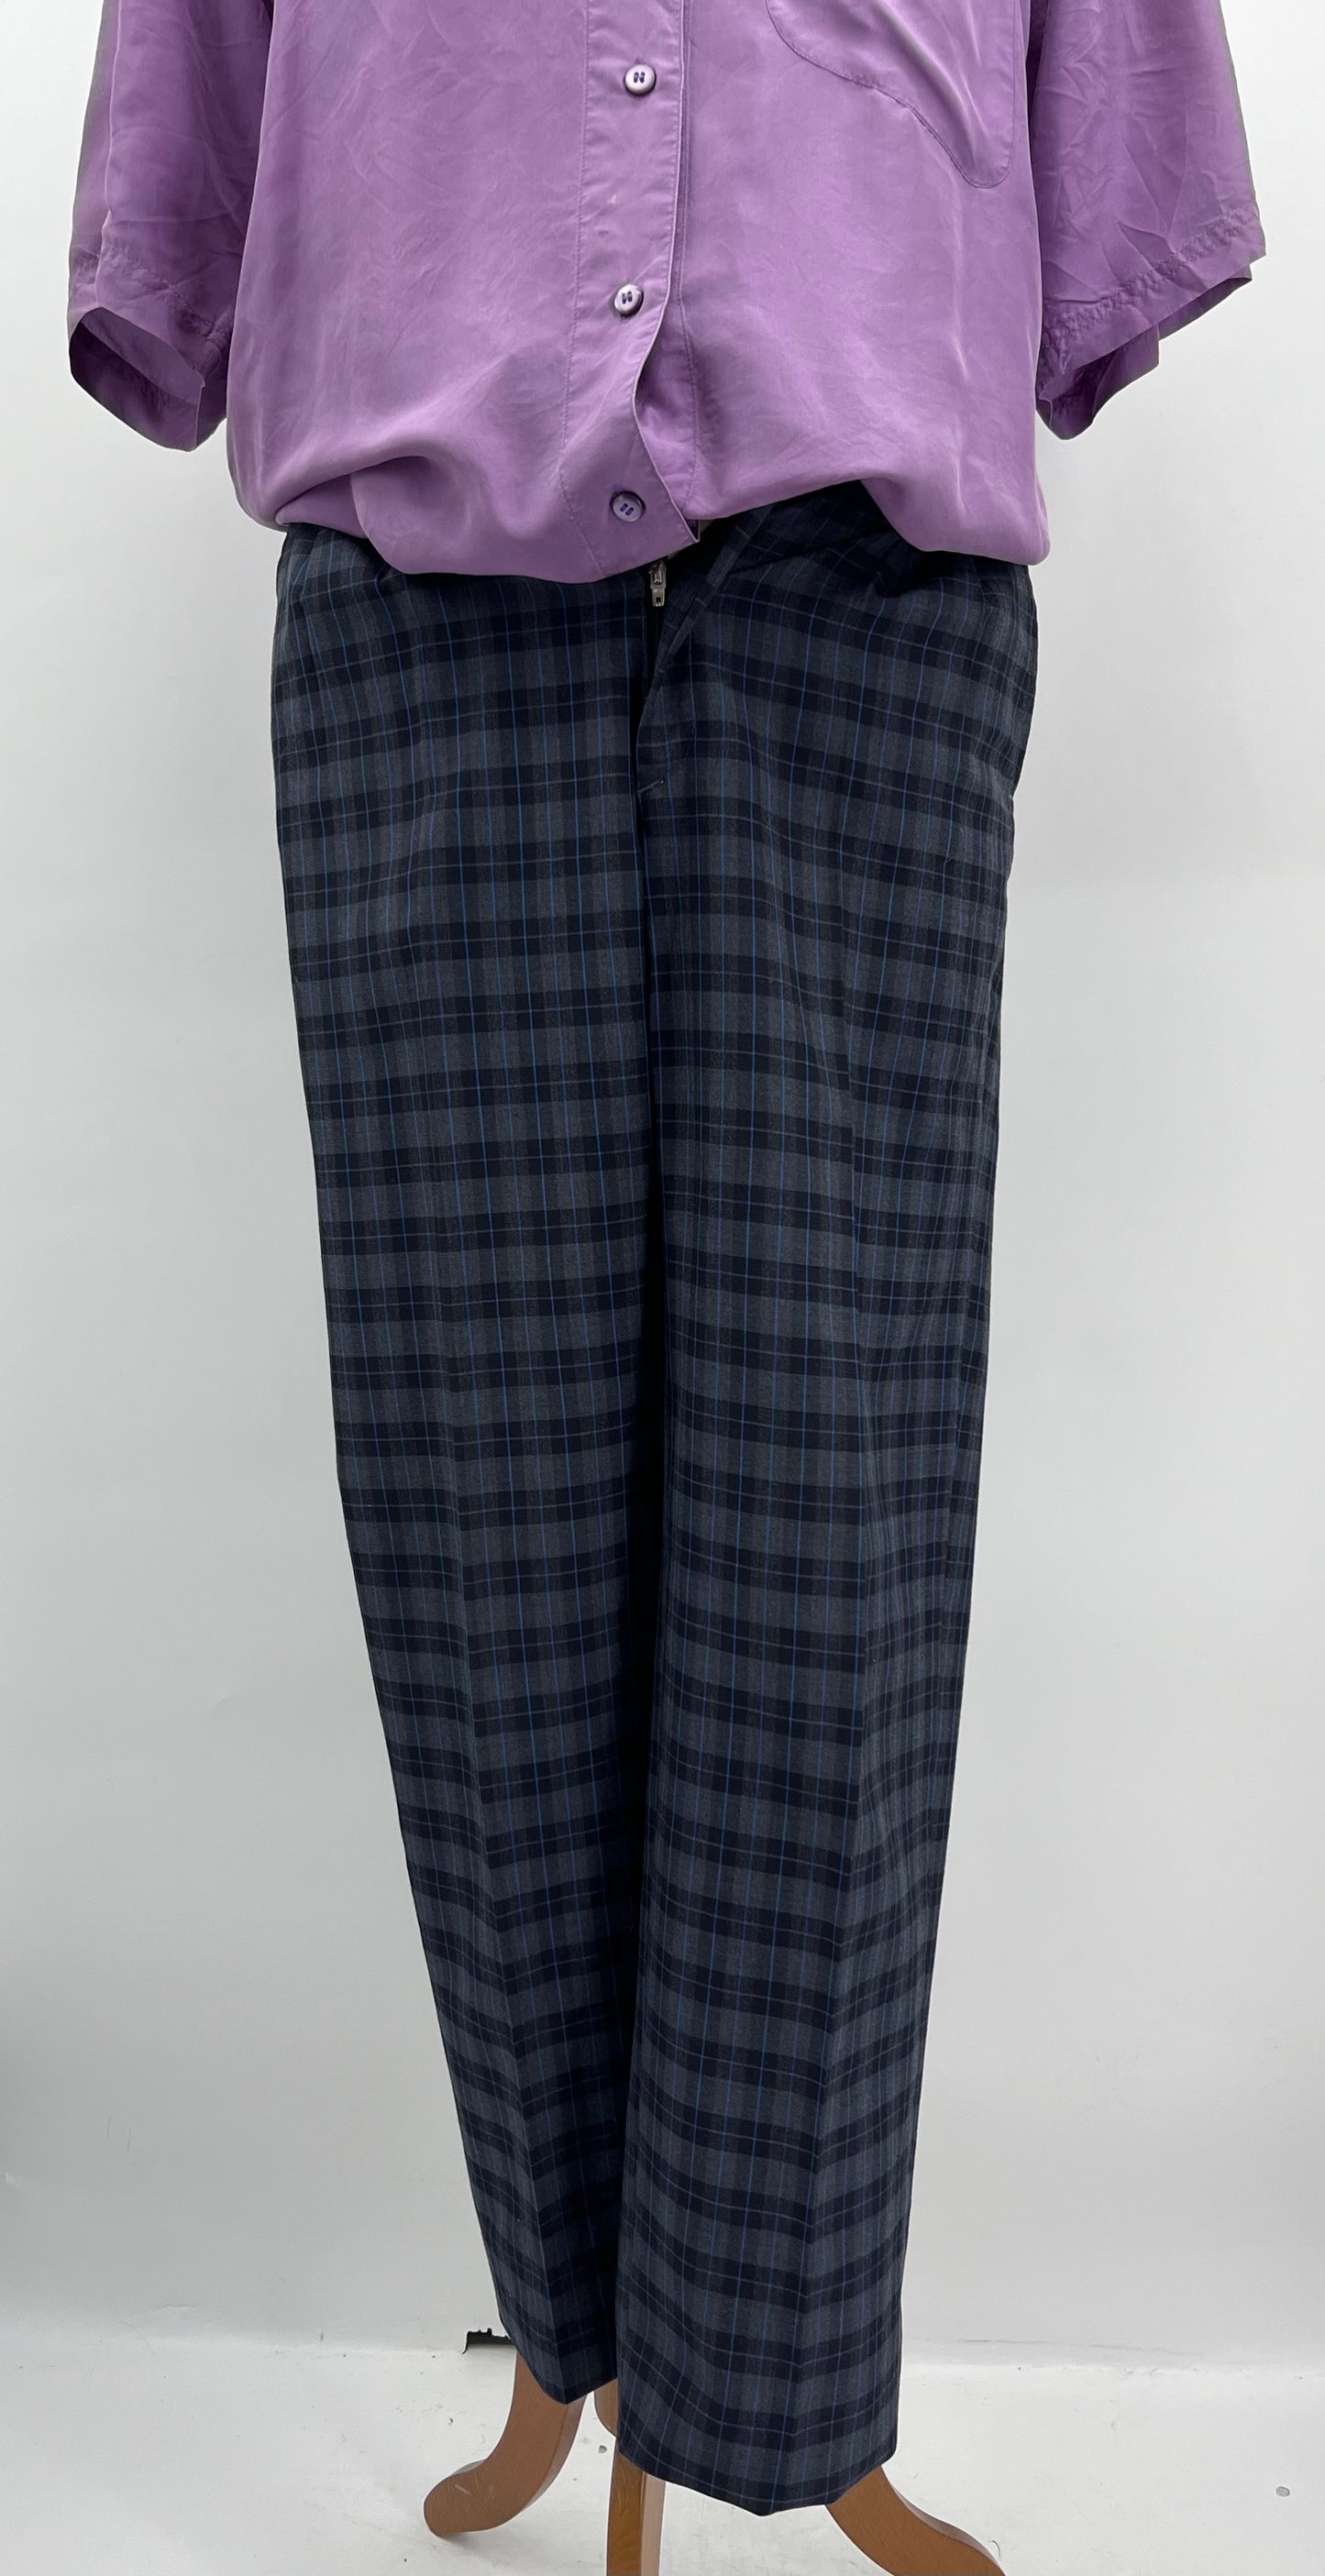 Ruutukuvioiset miesten housut, 80-90-luku, vyöt.ymp. 82cm